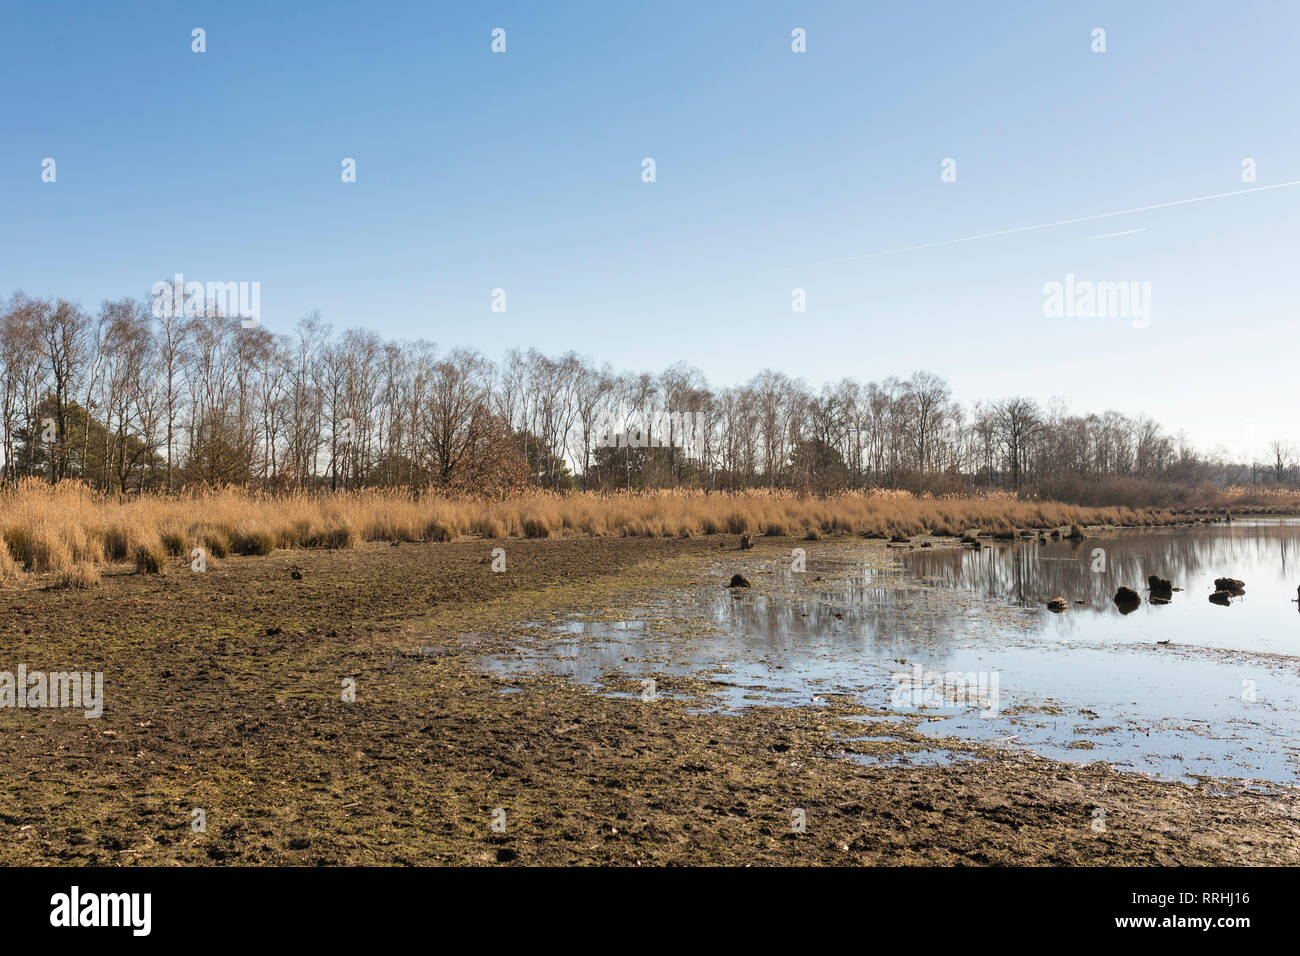 Wasserknappheit an einem See bei Cartierheide im Winter, bedingt durch 2018 sommerliche Dürre und einen trockenen Winter. Niederlande. Stockfoto